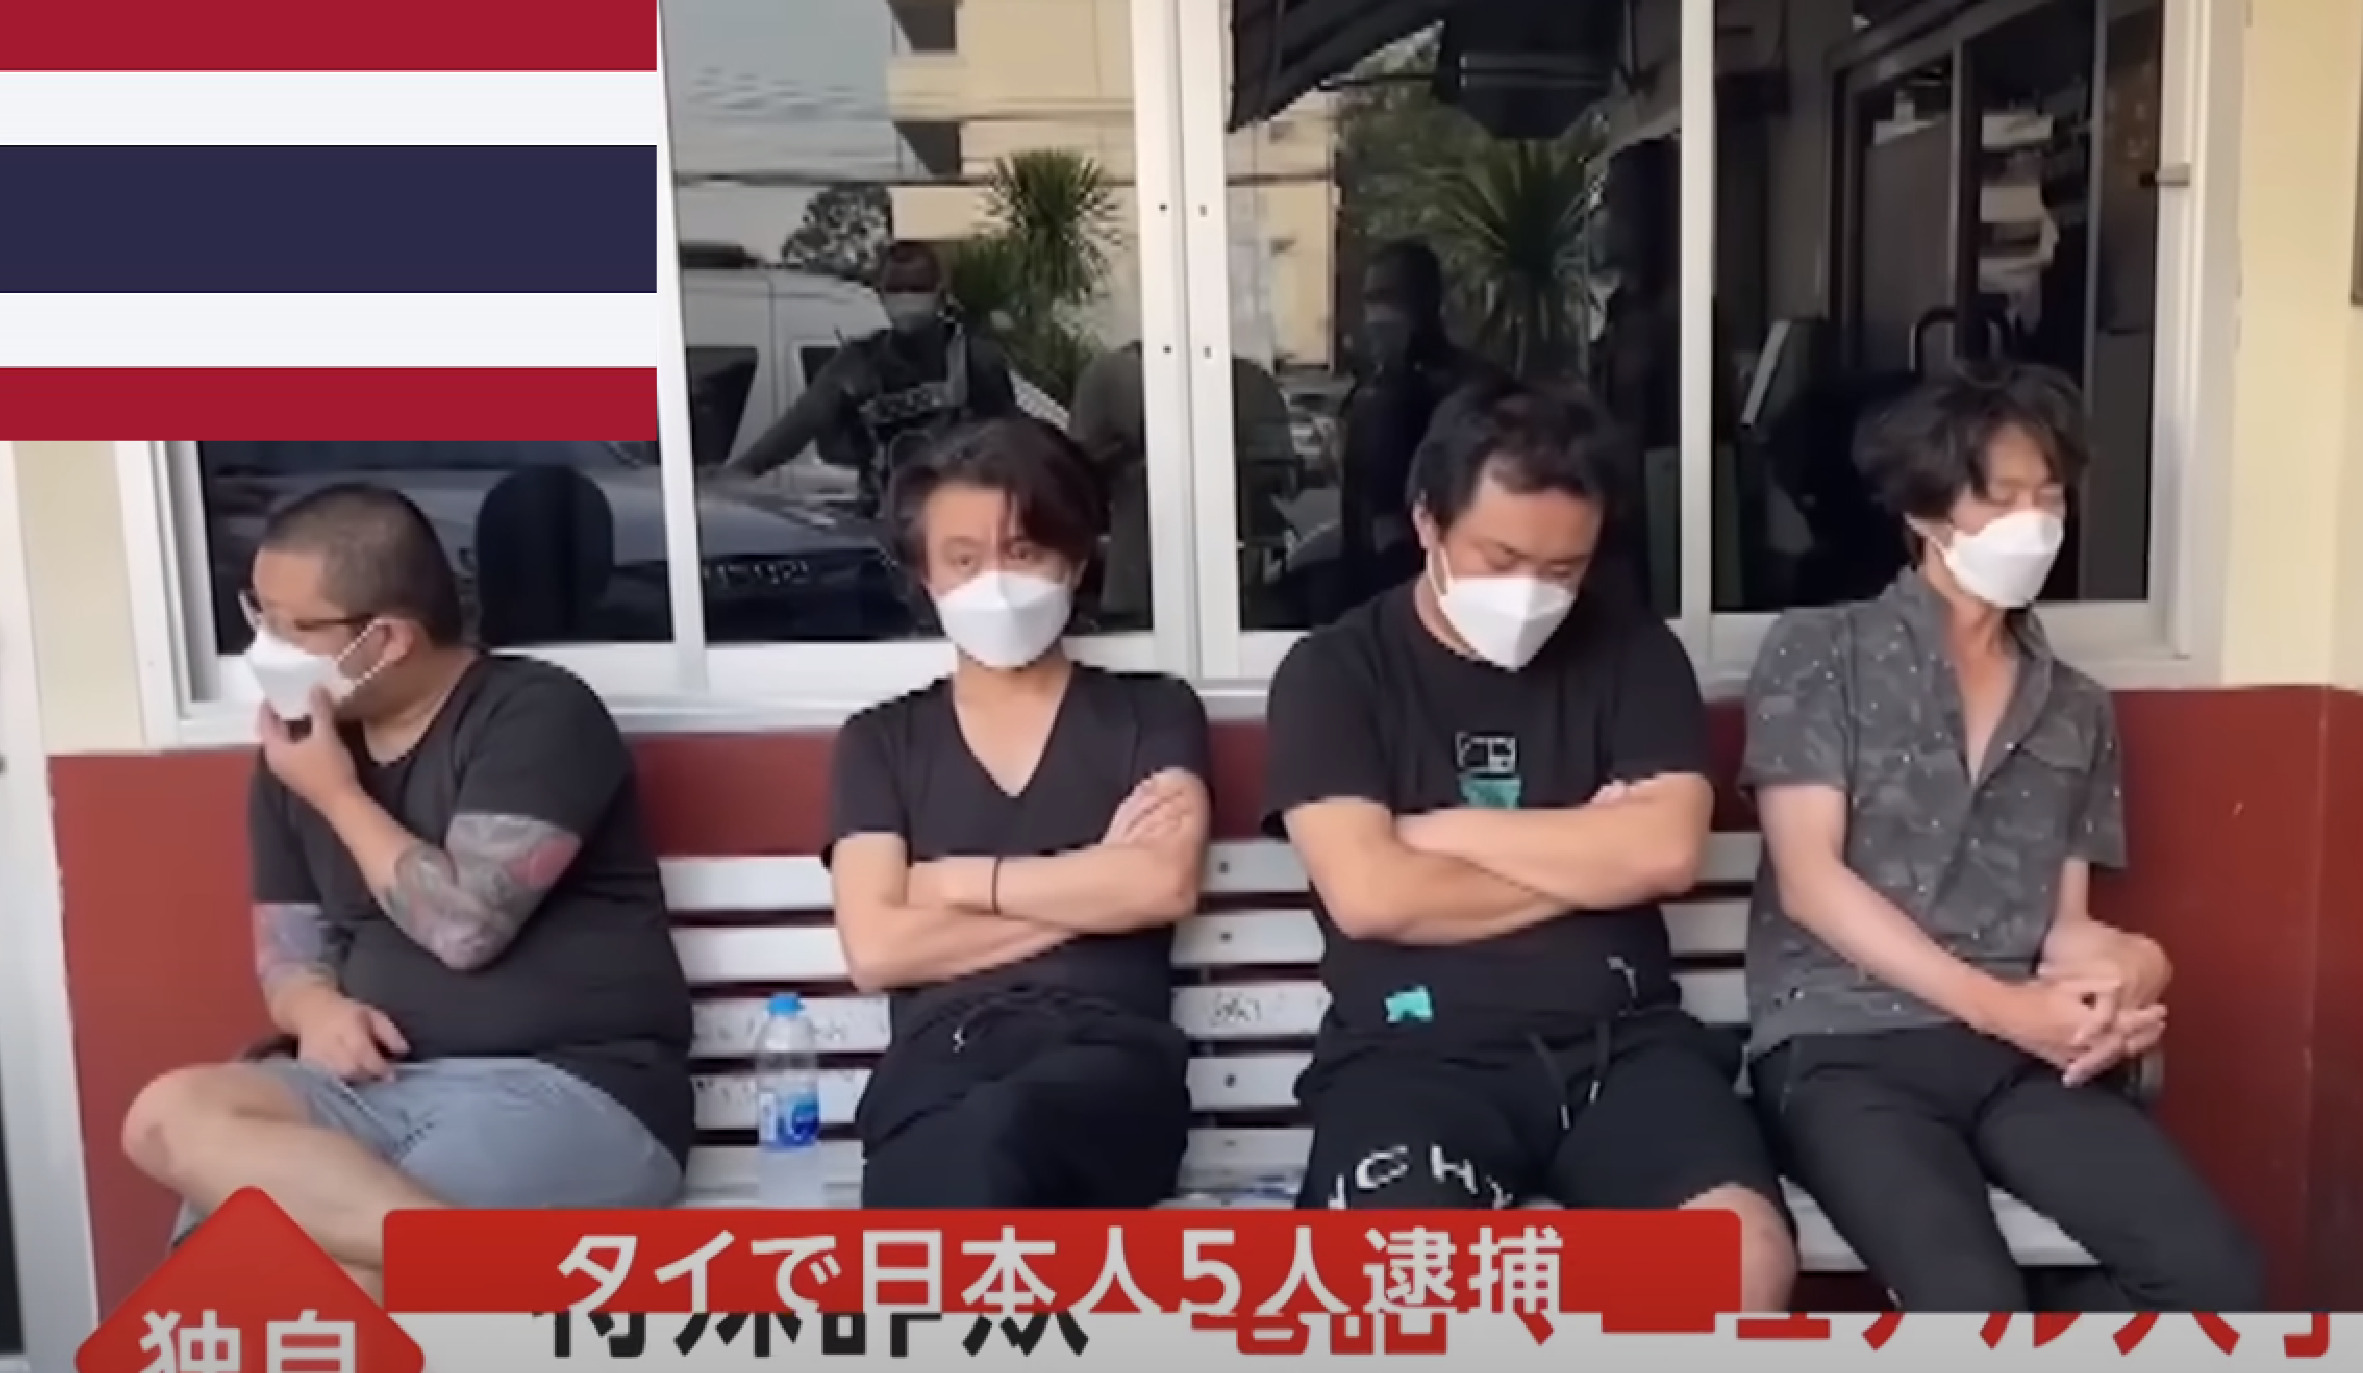 日本人グループの還付金詐欺摘発、就職詐欺の被害者が日本大使館へ